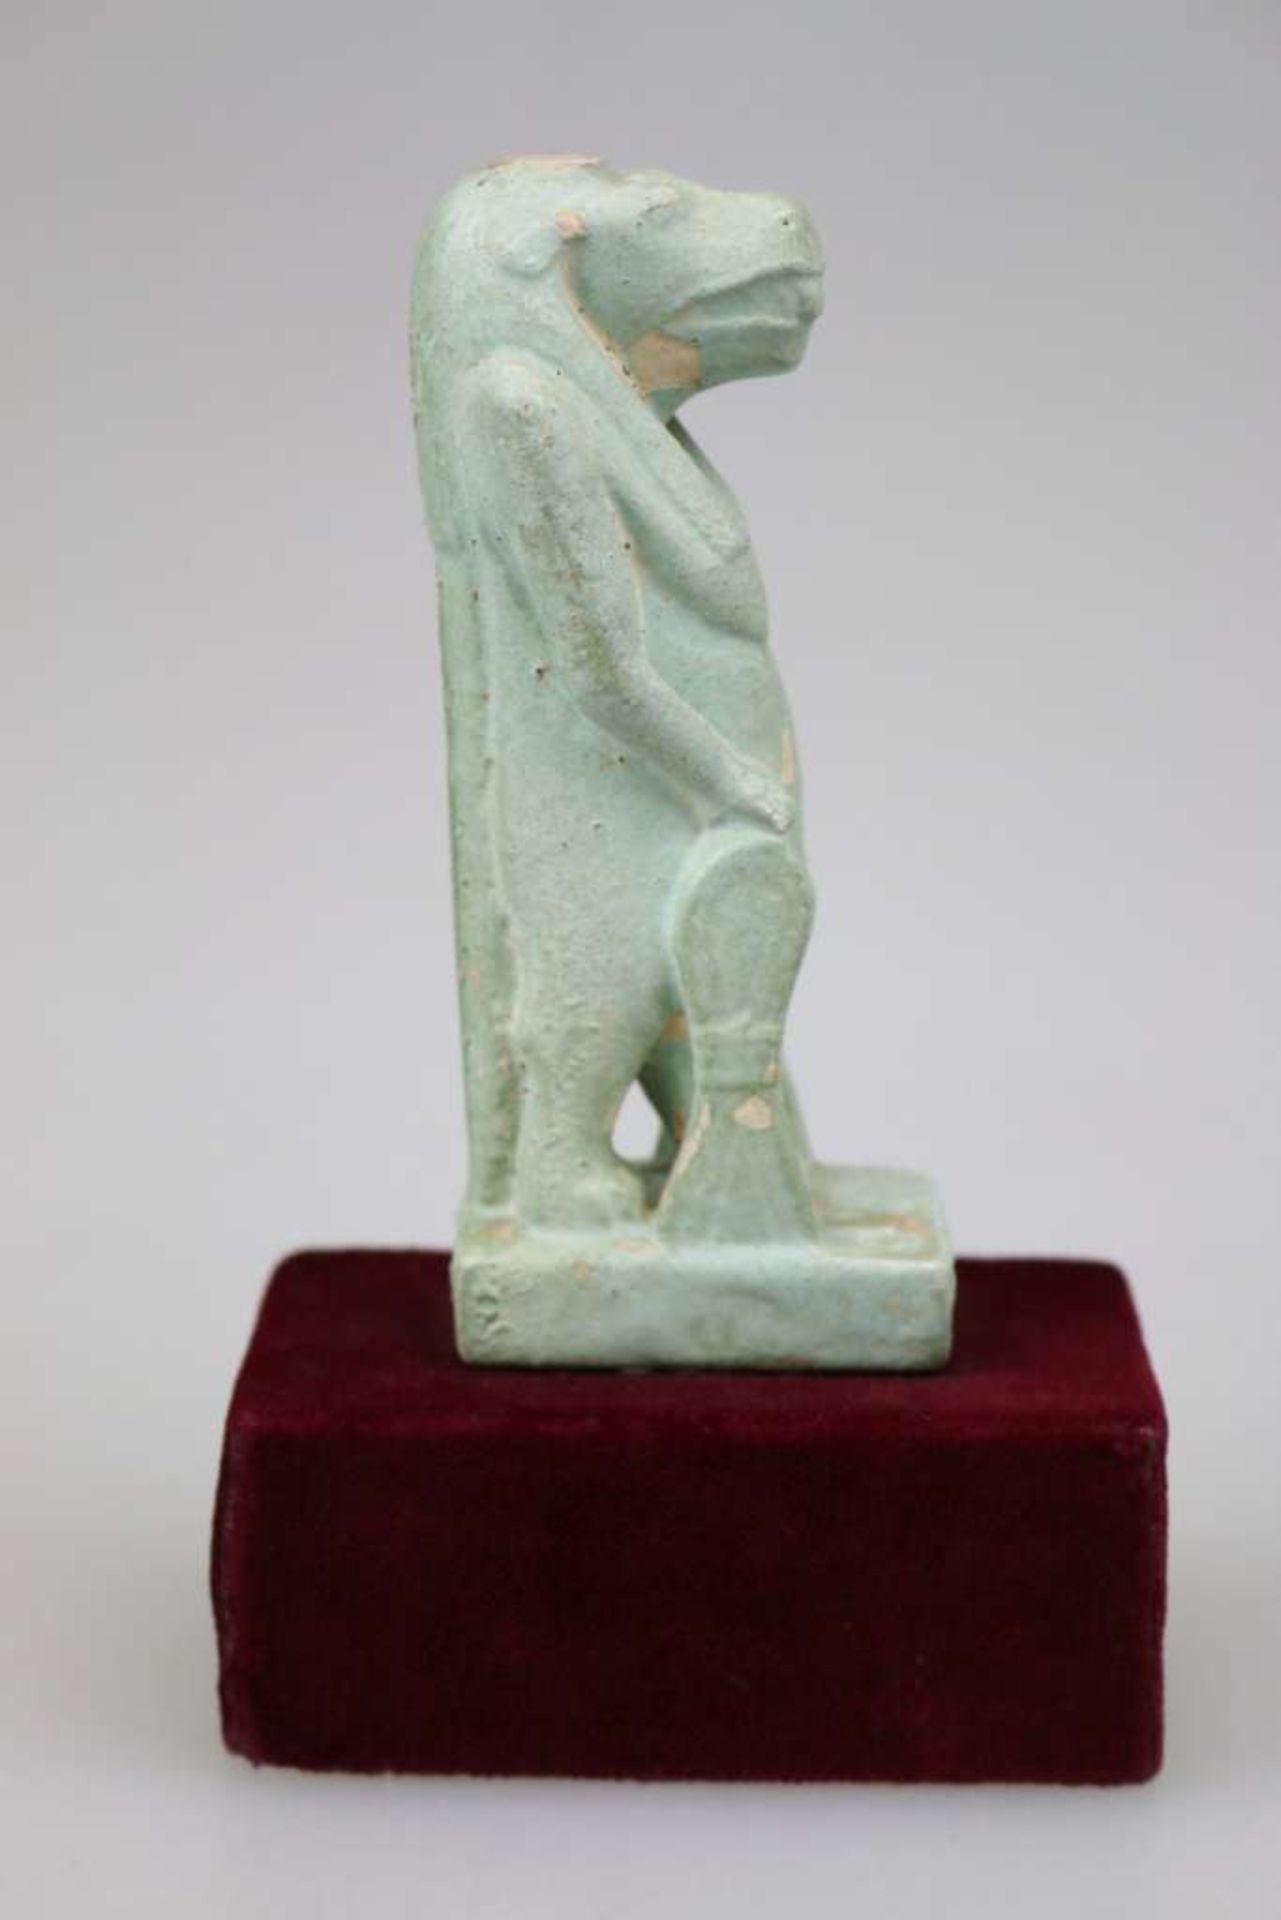 Ägypten, Statuette der Gottheit Taweret, Schutzgottheit der Geburt und Fruchtbarkeit, grün glasierte